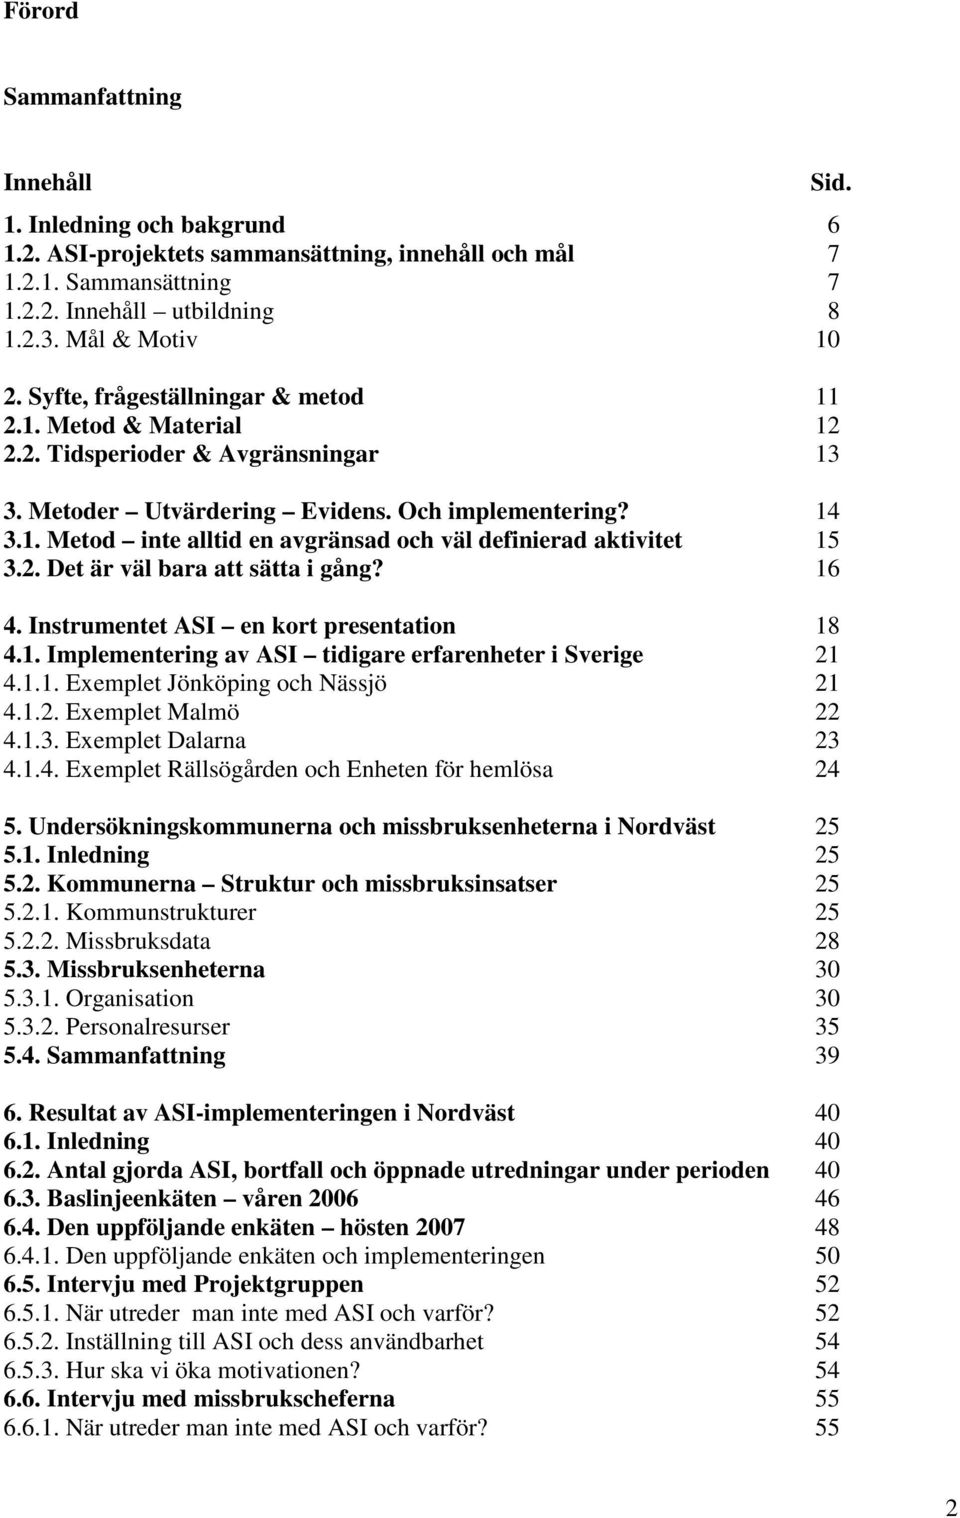 2. Det är väl bara att sätta i gång? 16 4. Instrumentet ASI en kort presentation 18 4.1. Implementering av ASI tidigare erfarenheter i Sverige 21 4.1.1. Exemplet Jönköping och Nässjö 21 4.1.2. Exemplet Malmö 22 4.